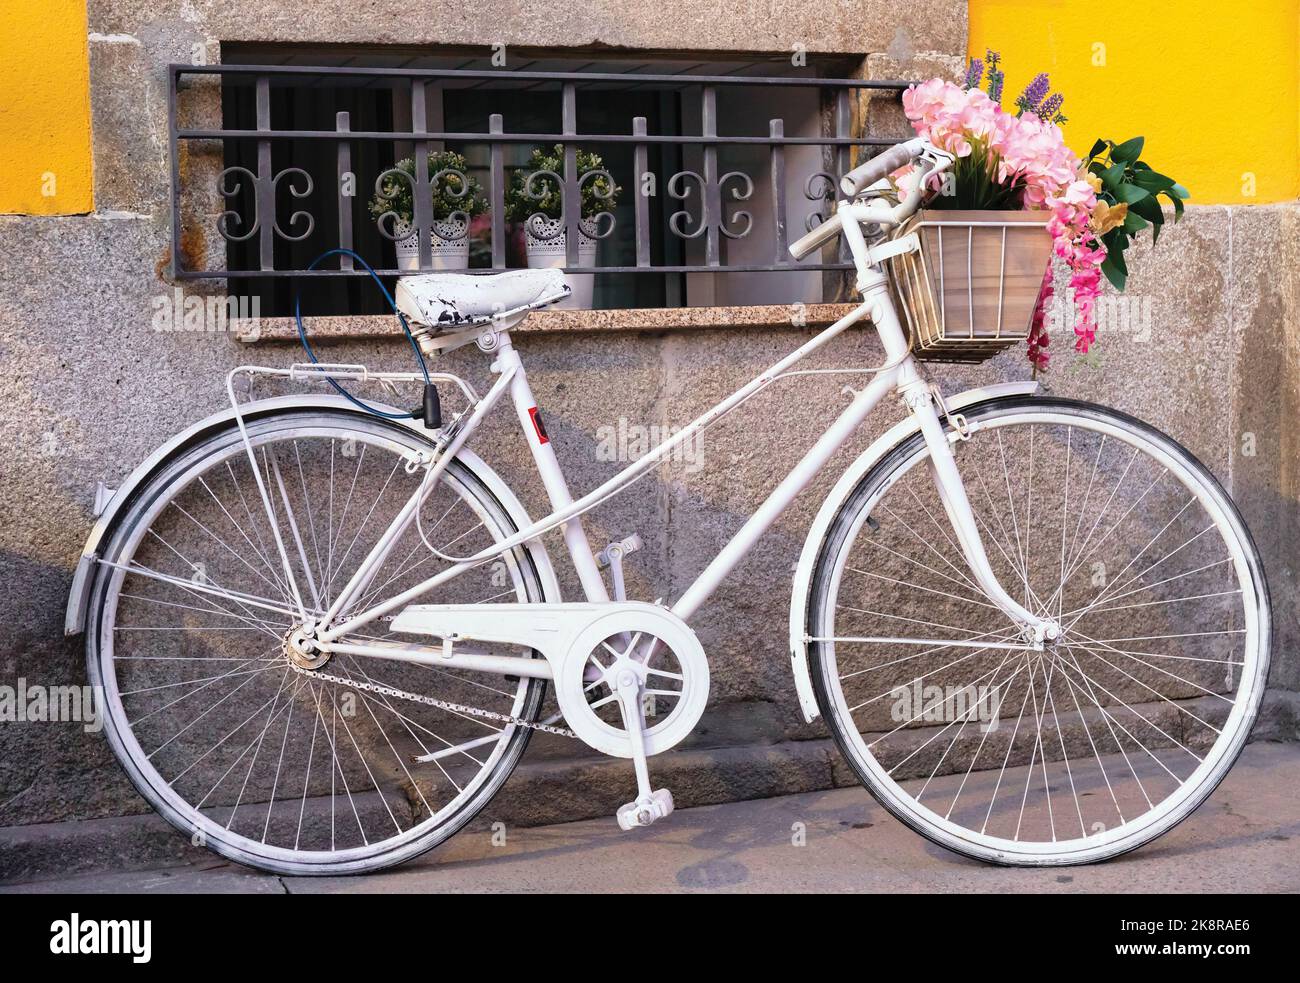 Das Weiße Fahrrad. Altes Fahrrad, weiß lackiert, Blumen im Warenkorb unter Lenker. Fotografiert in Matosinhos, Portugal. Stockfoto